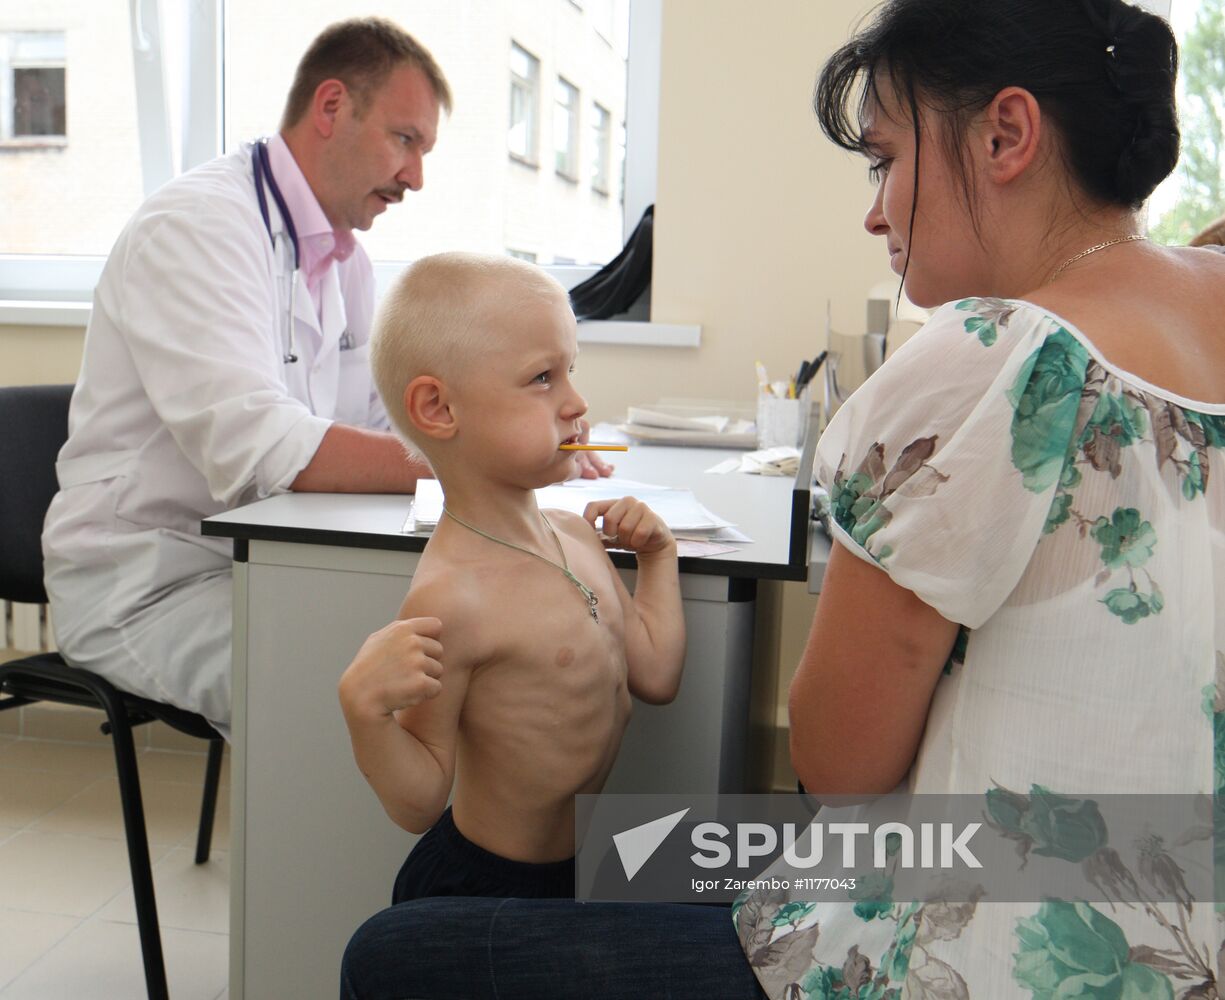 Work of children's clinic in Kaliningrad